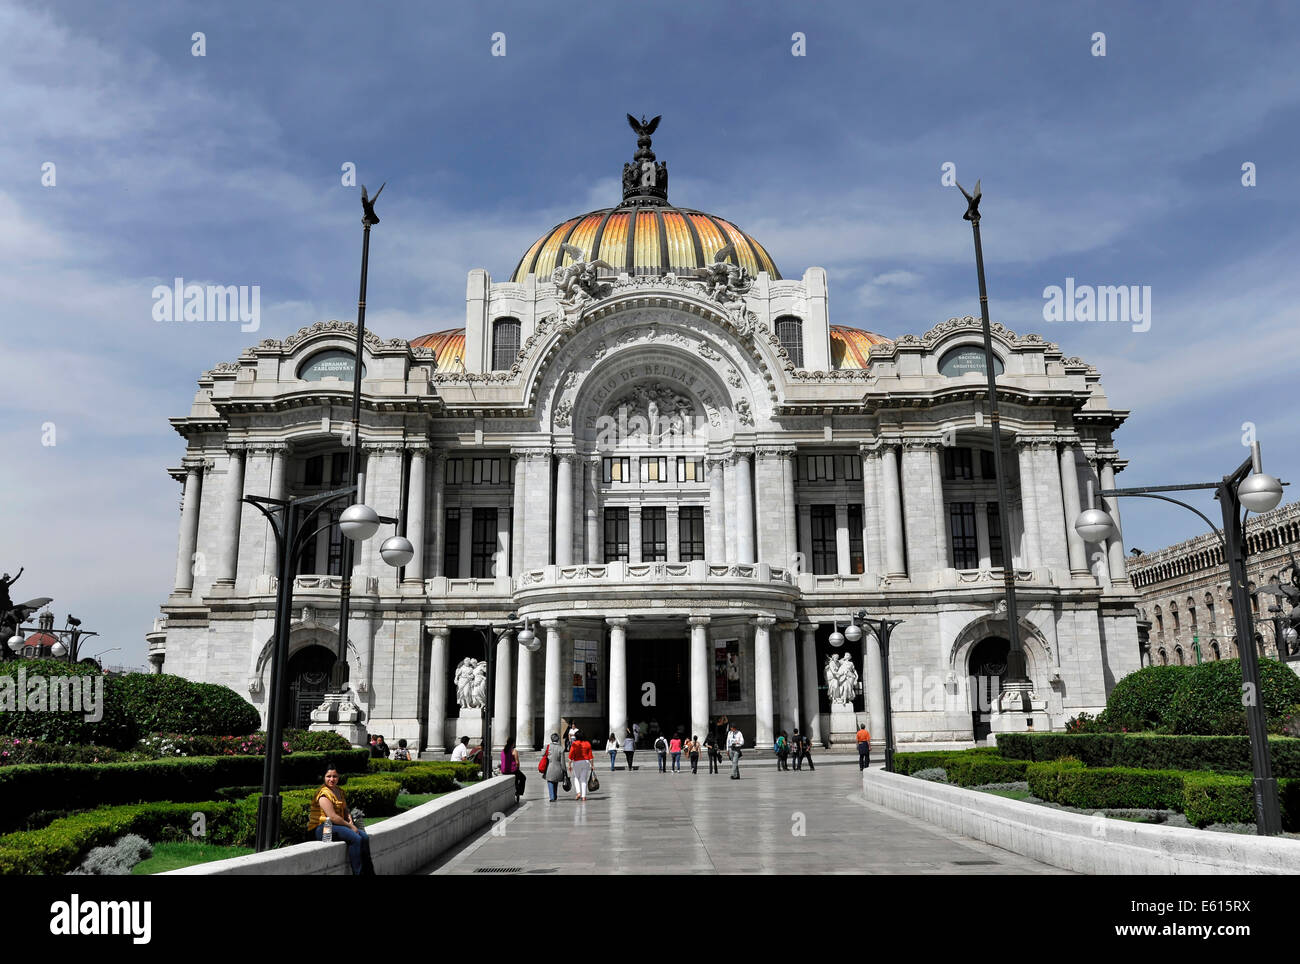 Palacio de Bellas Artes, Palace of Fine Arts, Mexico City, Federal District, Mexico Stock Photo